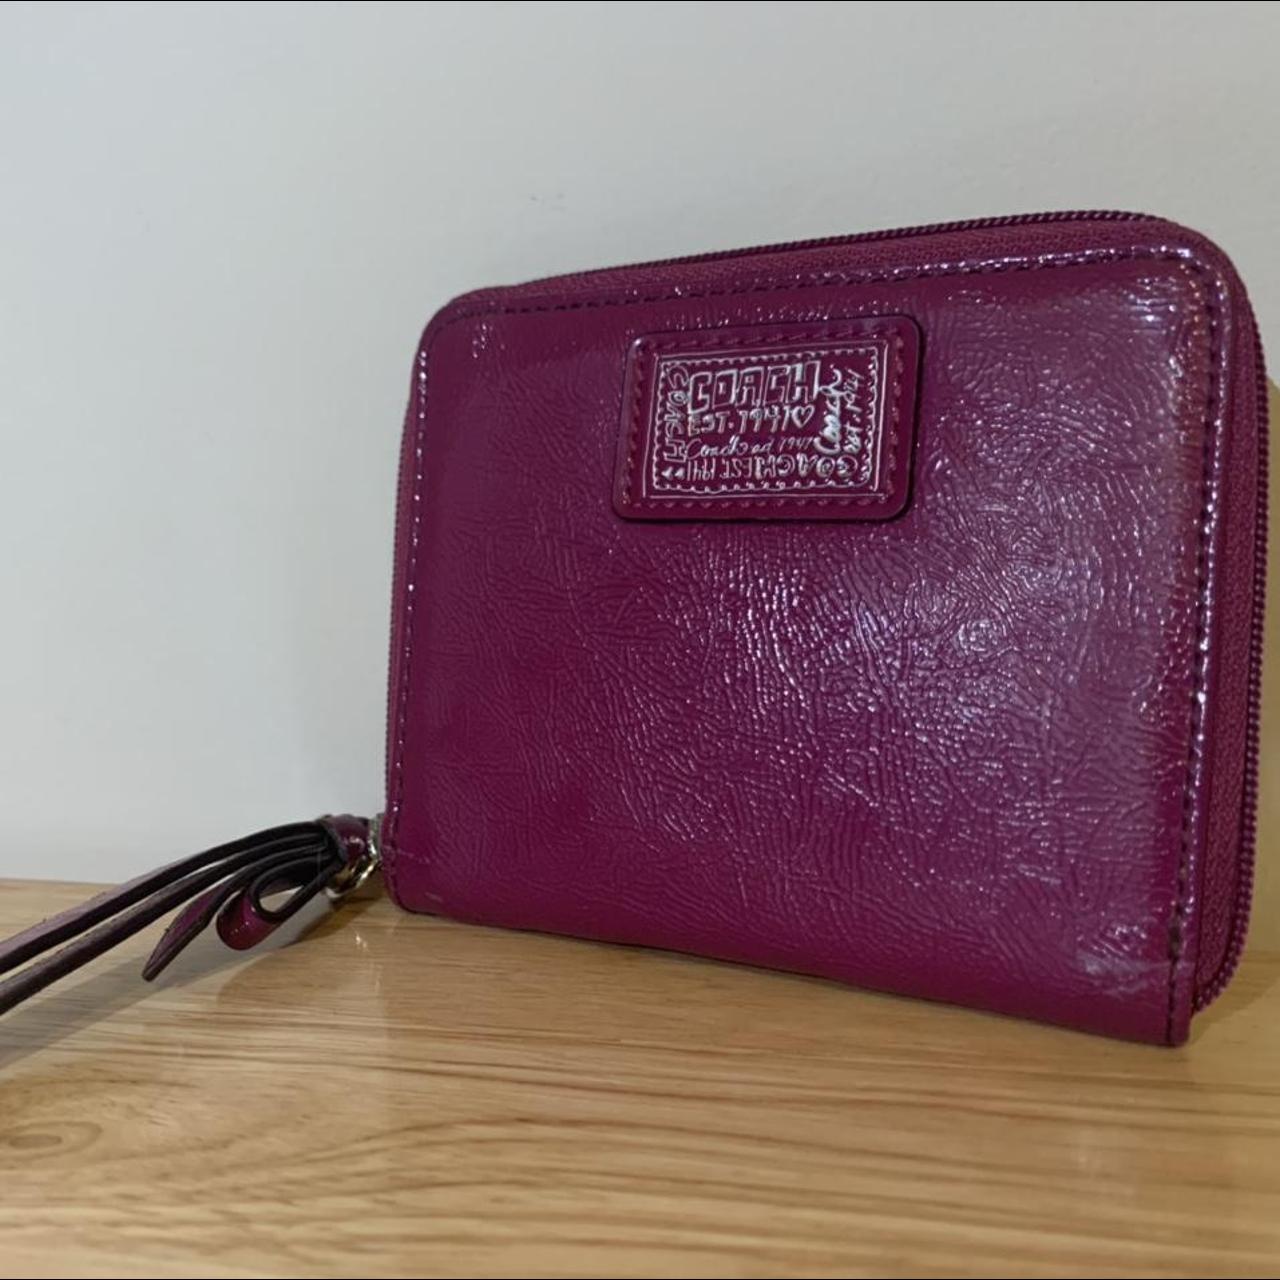 Coach Vintage Brown & Hot Pink Wristlet Wallet - Depop